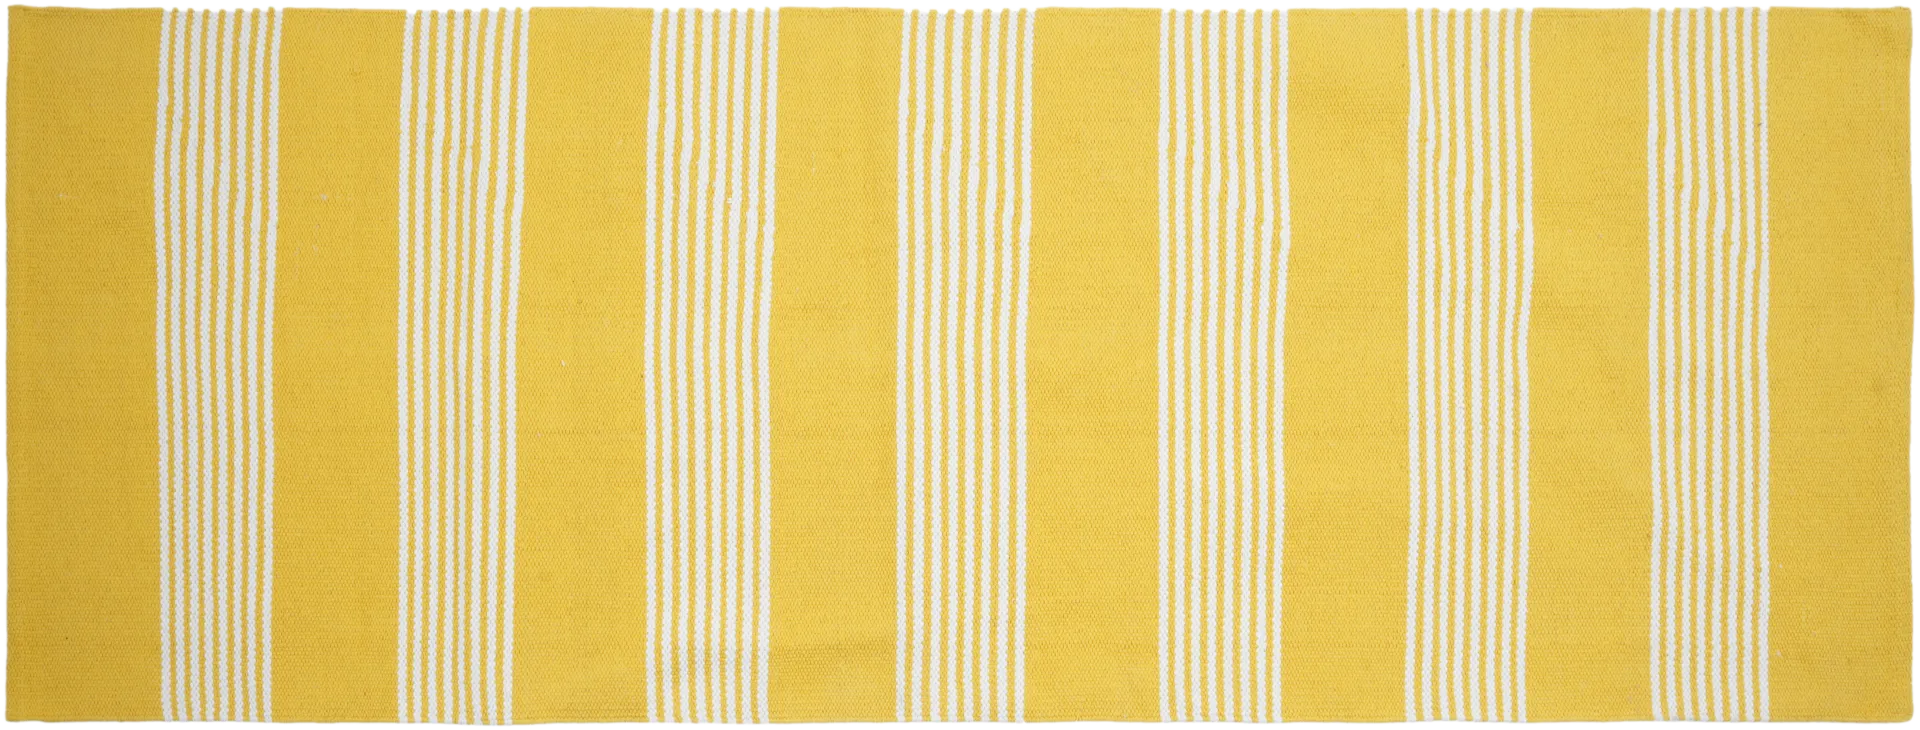 House puuvillamatto Arki-raidat 80x200 cm, keltainen/ luonnonvalkoinen